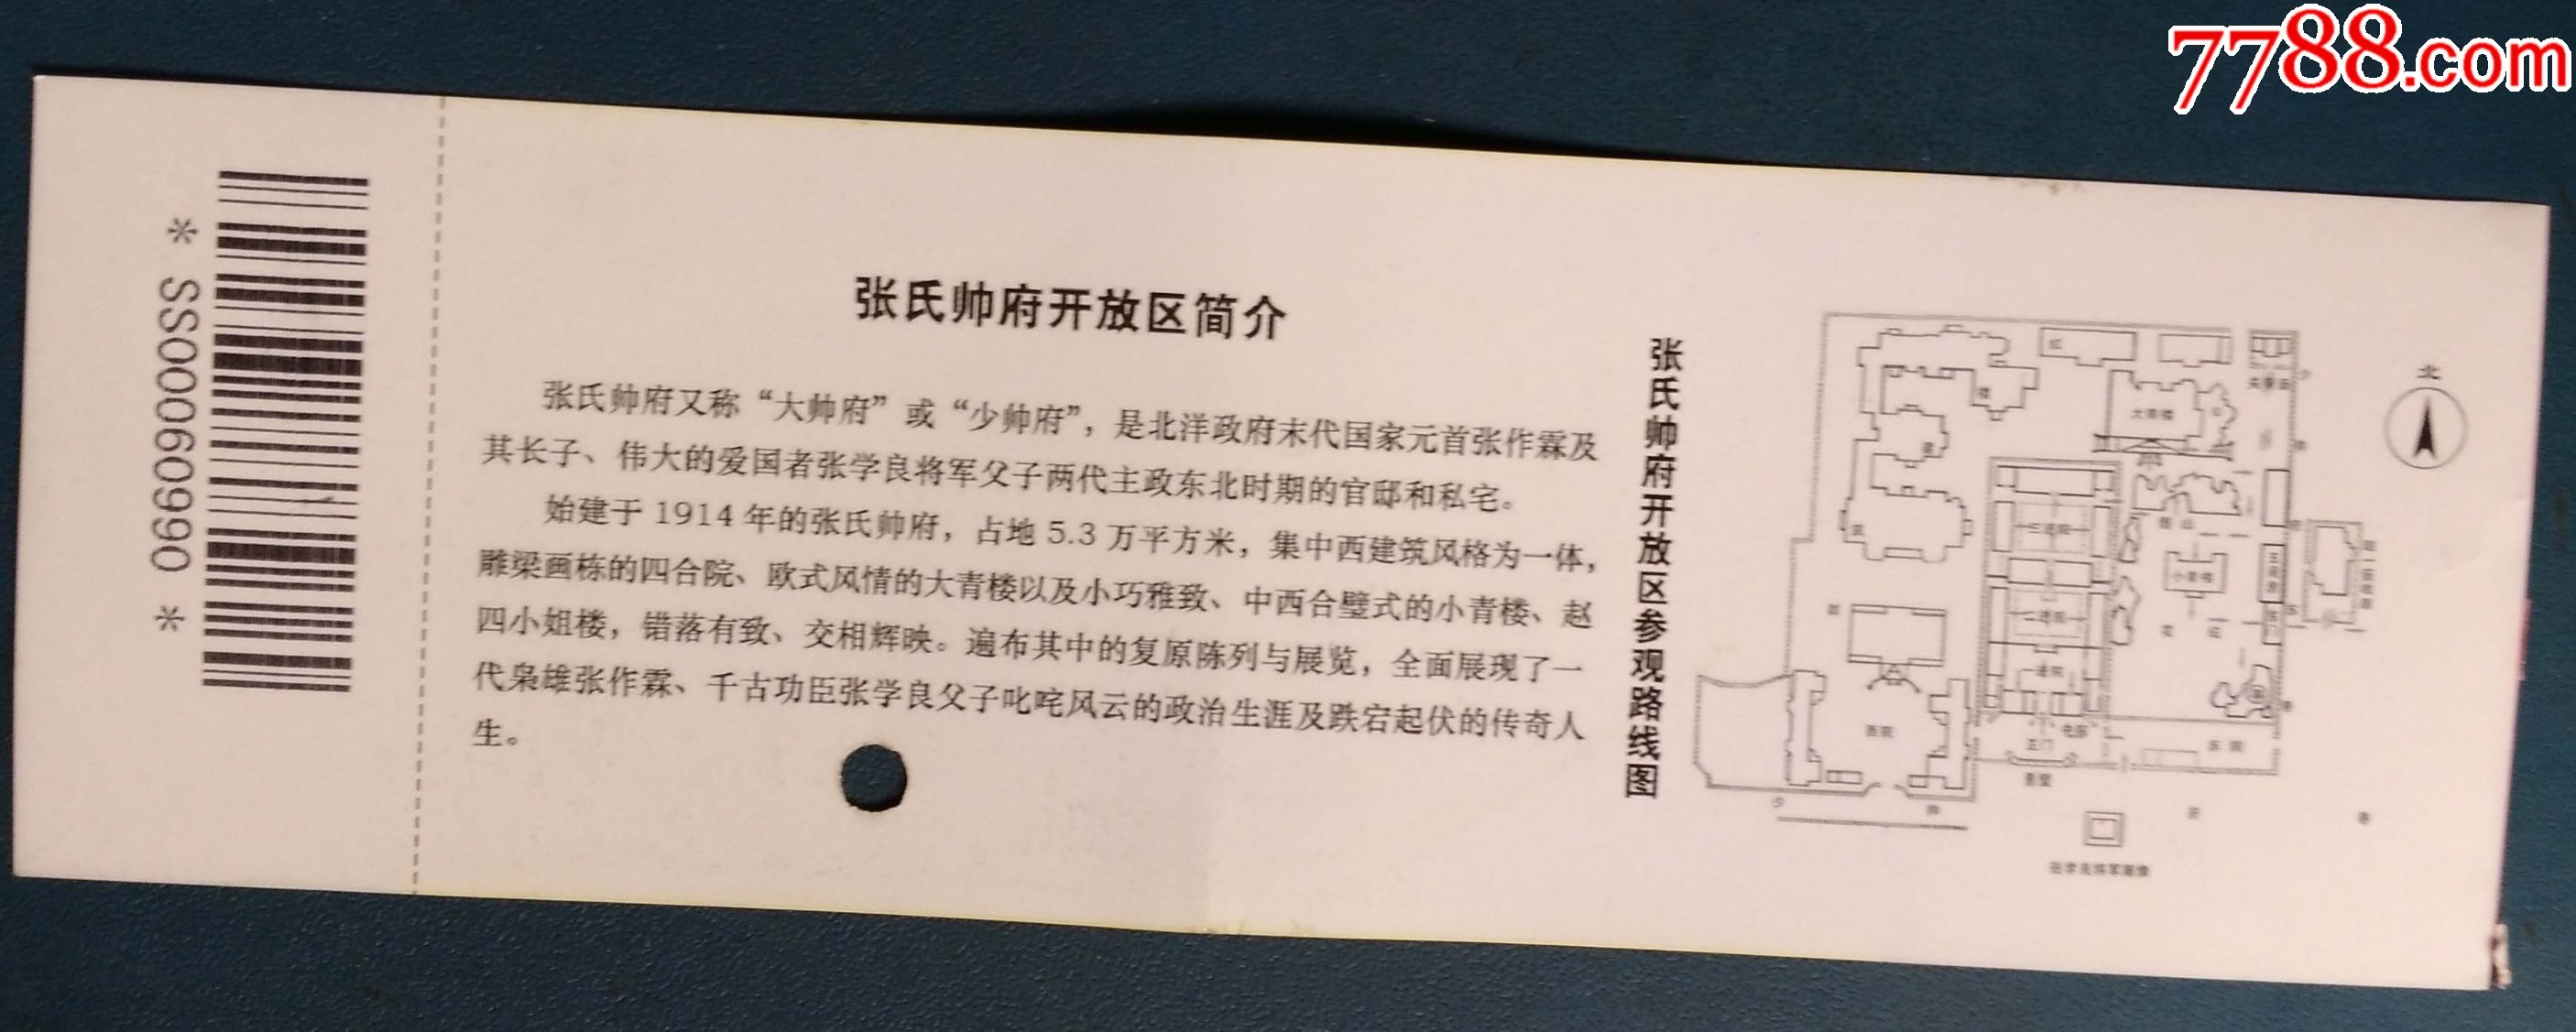 沈阳张氏帅府博物馆15年版的28元的_旅游景点门票_新